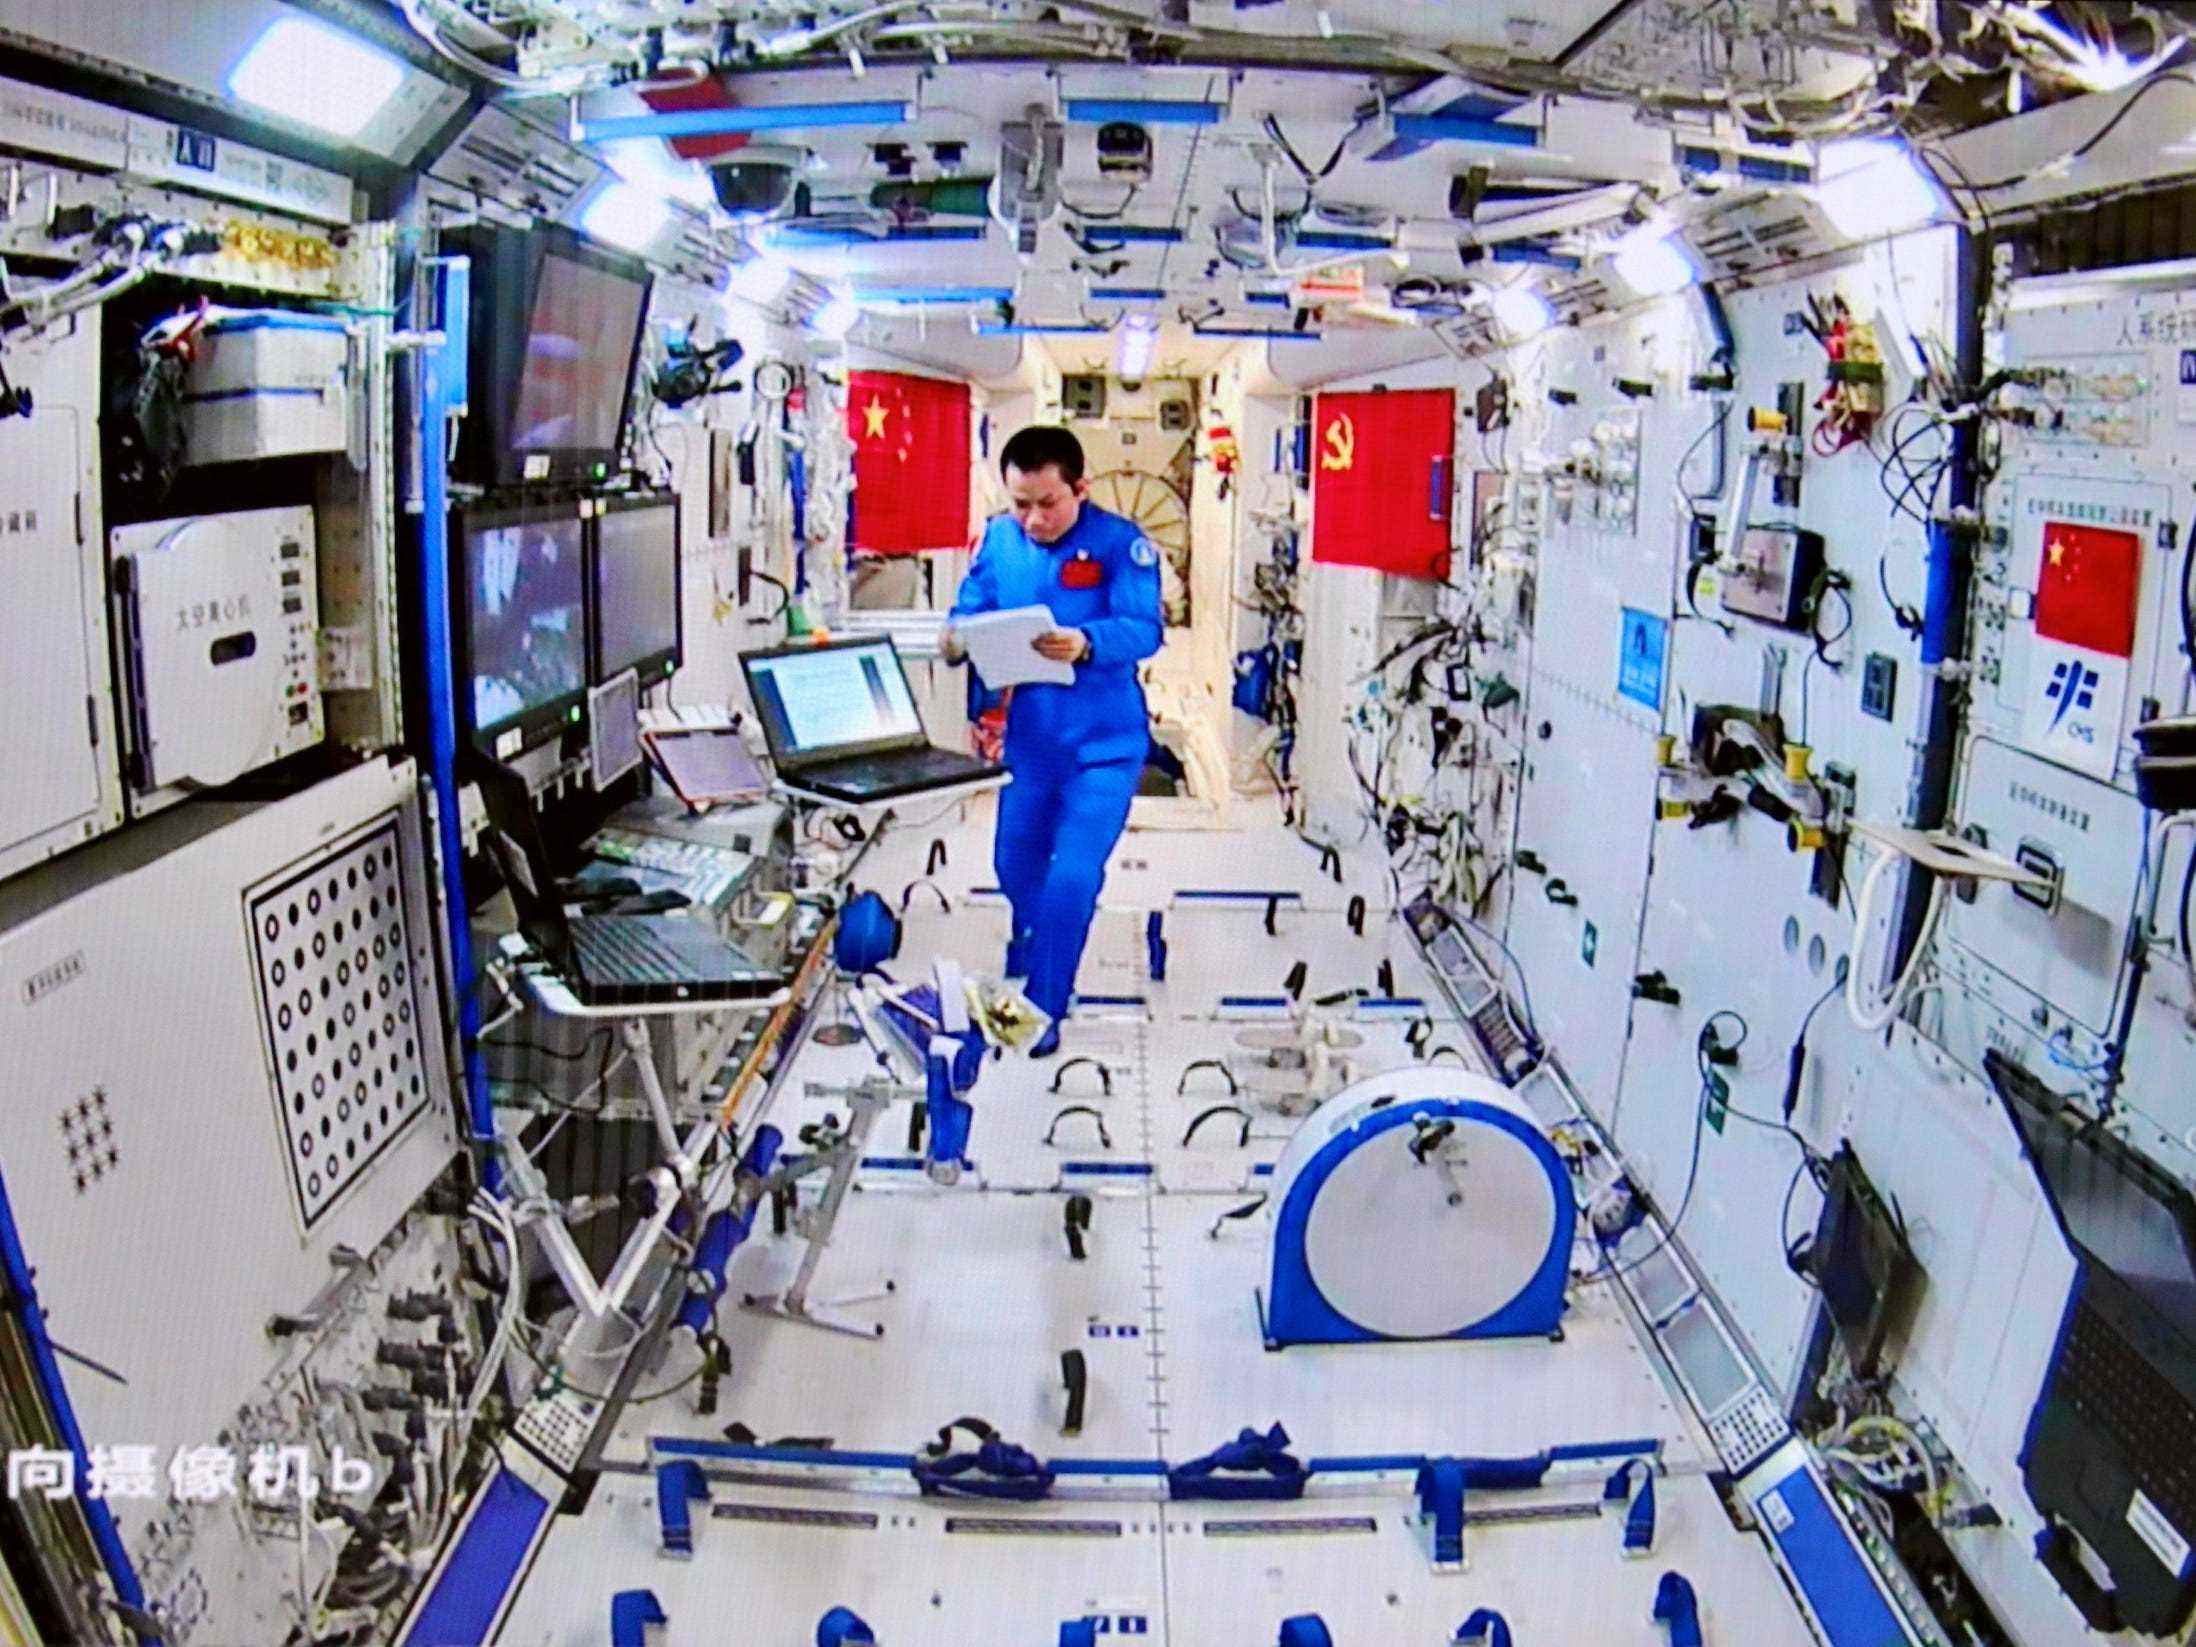 astronaut taikonaut in der chinesischen raumstation, der papiere im blauen overall betrachtet